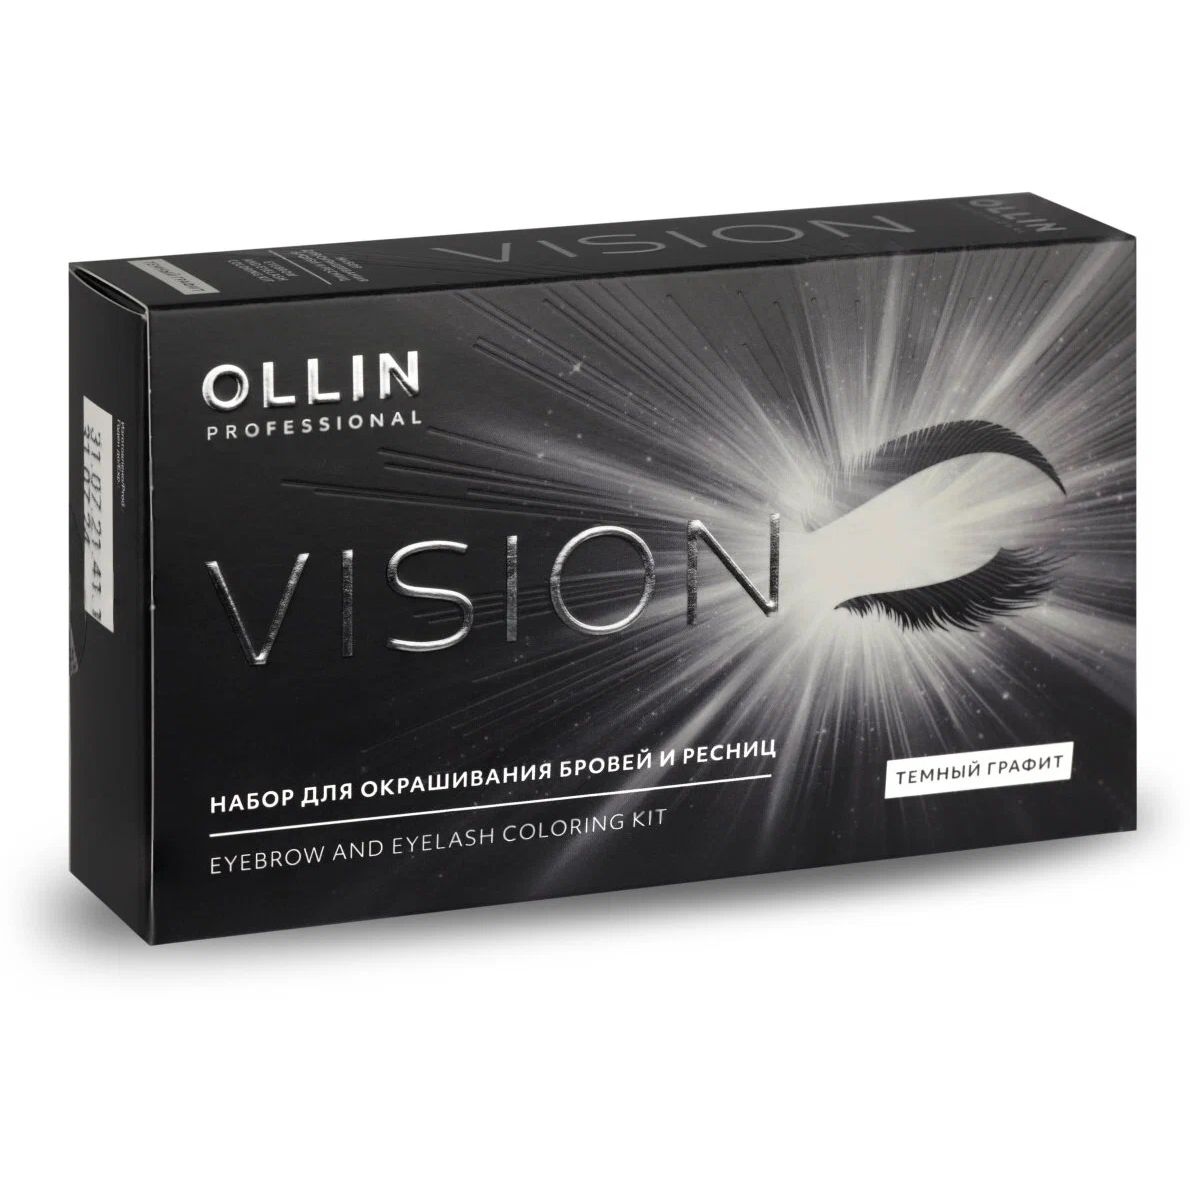 Набор для окрашивания бровей и ресниц OLLIN PROFESSIONAL Vision темный графит 2х20 мл крем краска для бровей и ресниц графит ollin vision set